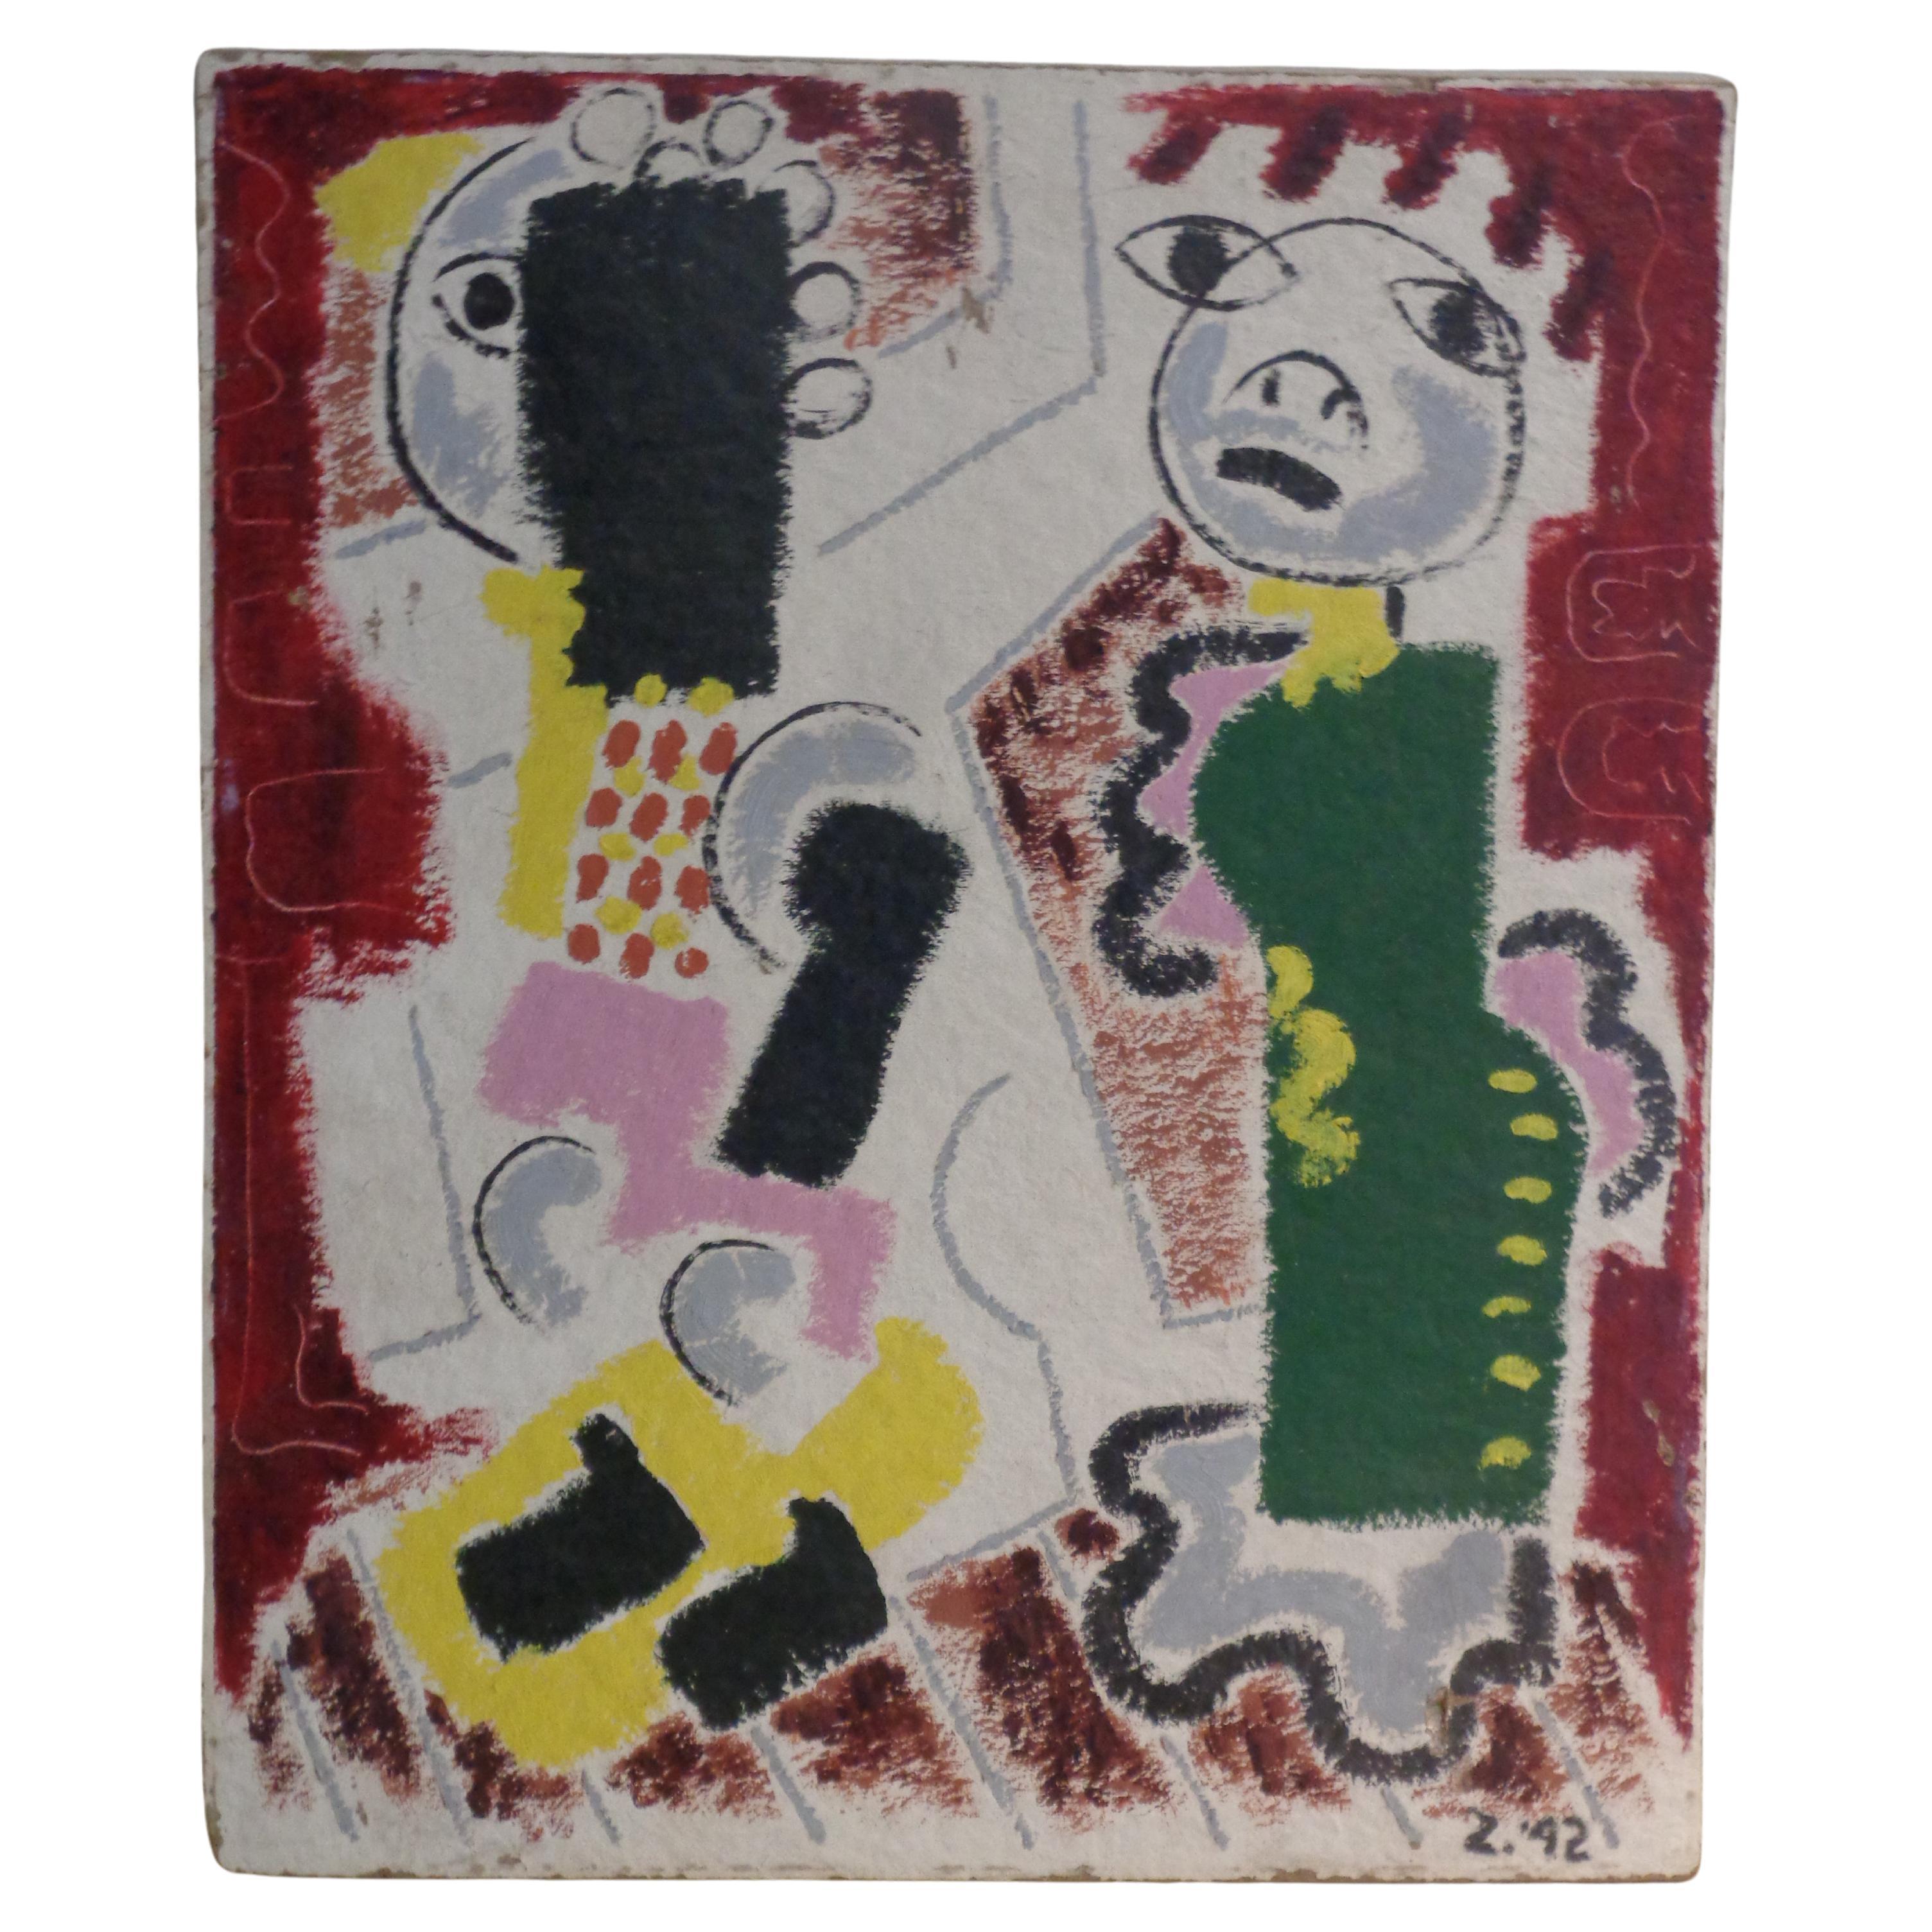 Pittura astratta figurativa primitiva - Zoute 1942 in vendita